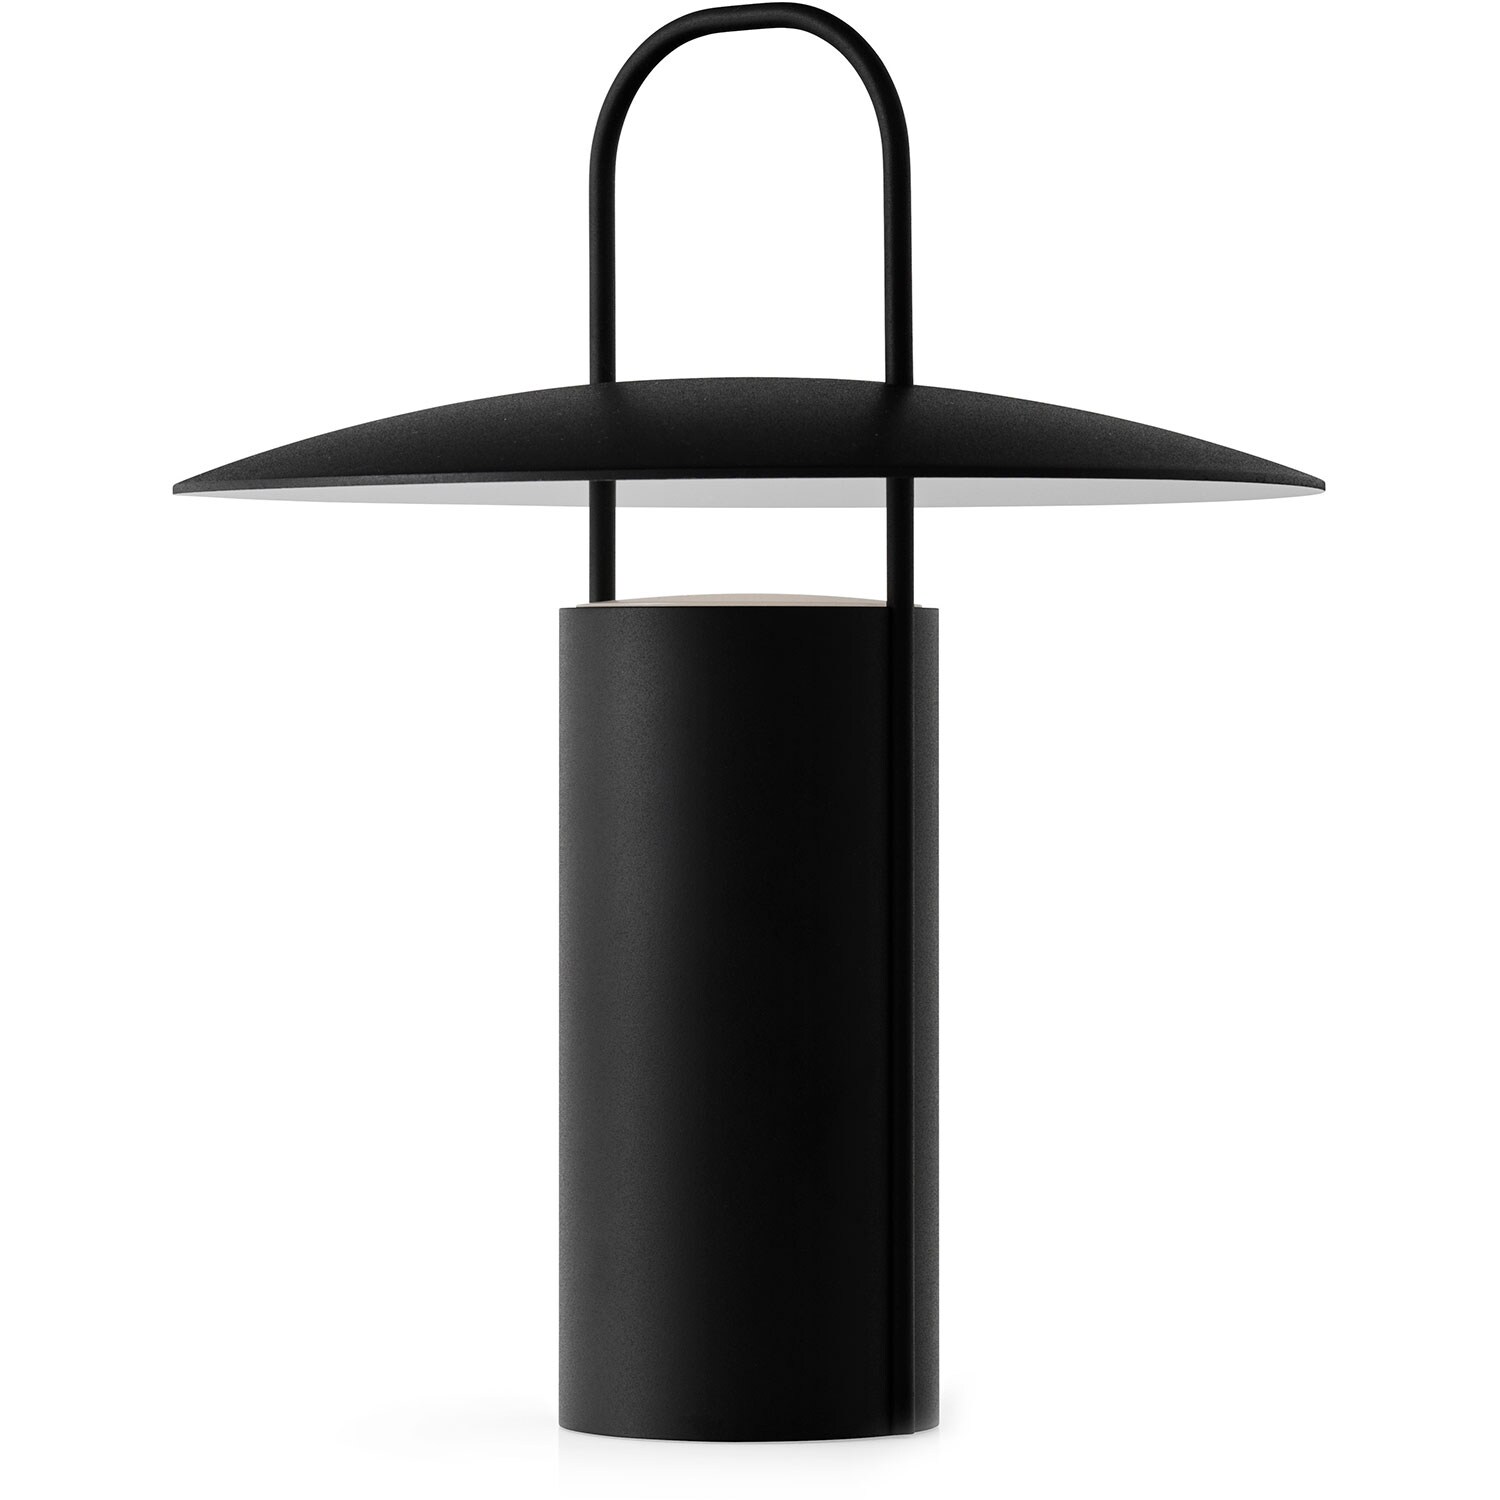 Menu Ray Bordslampa Portabel - Portabla lampor Aluminium Svart